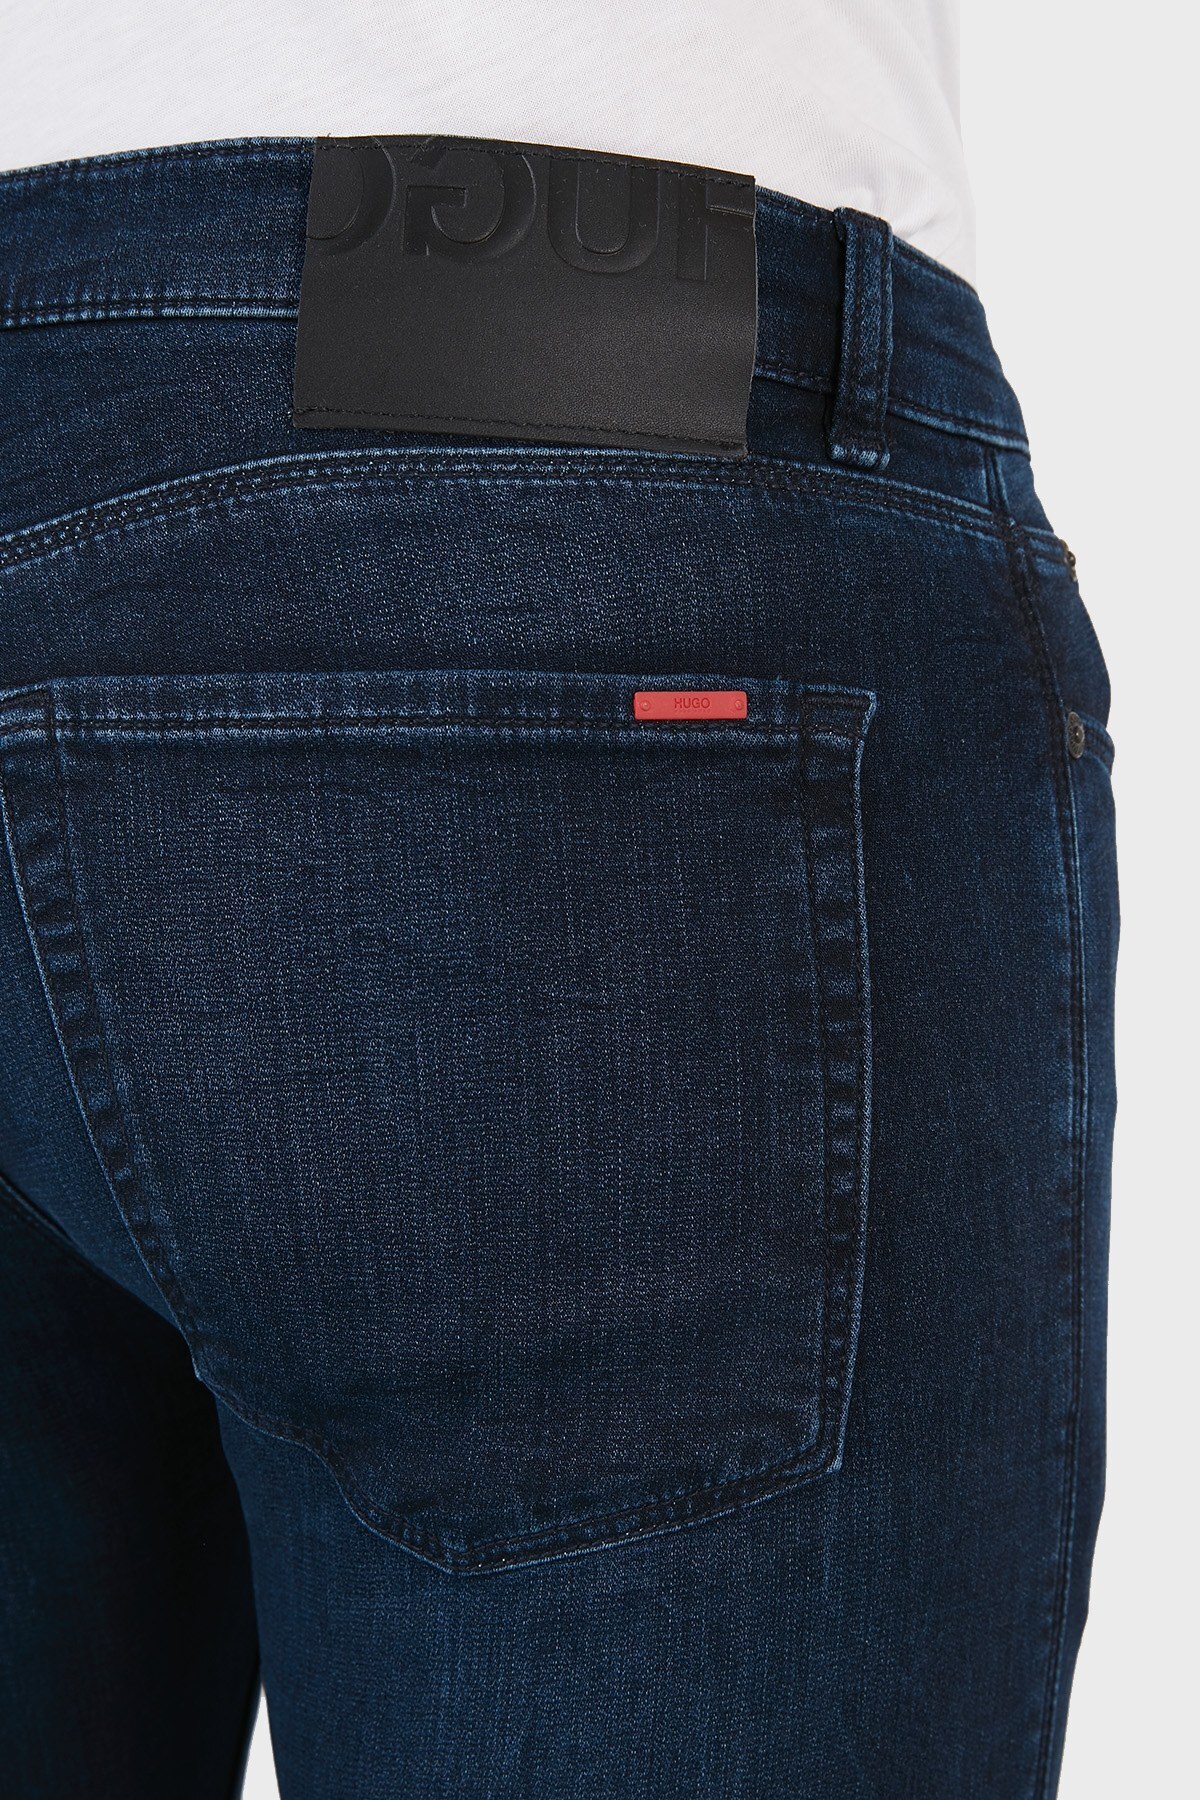 Hugo Boss Extra Slim Fit Cepli Pamuklu Jeans Erkek Kot Pantolon 50453495 408 LACİVERT